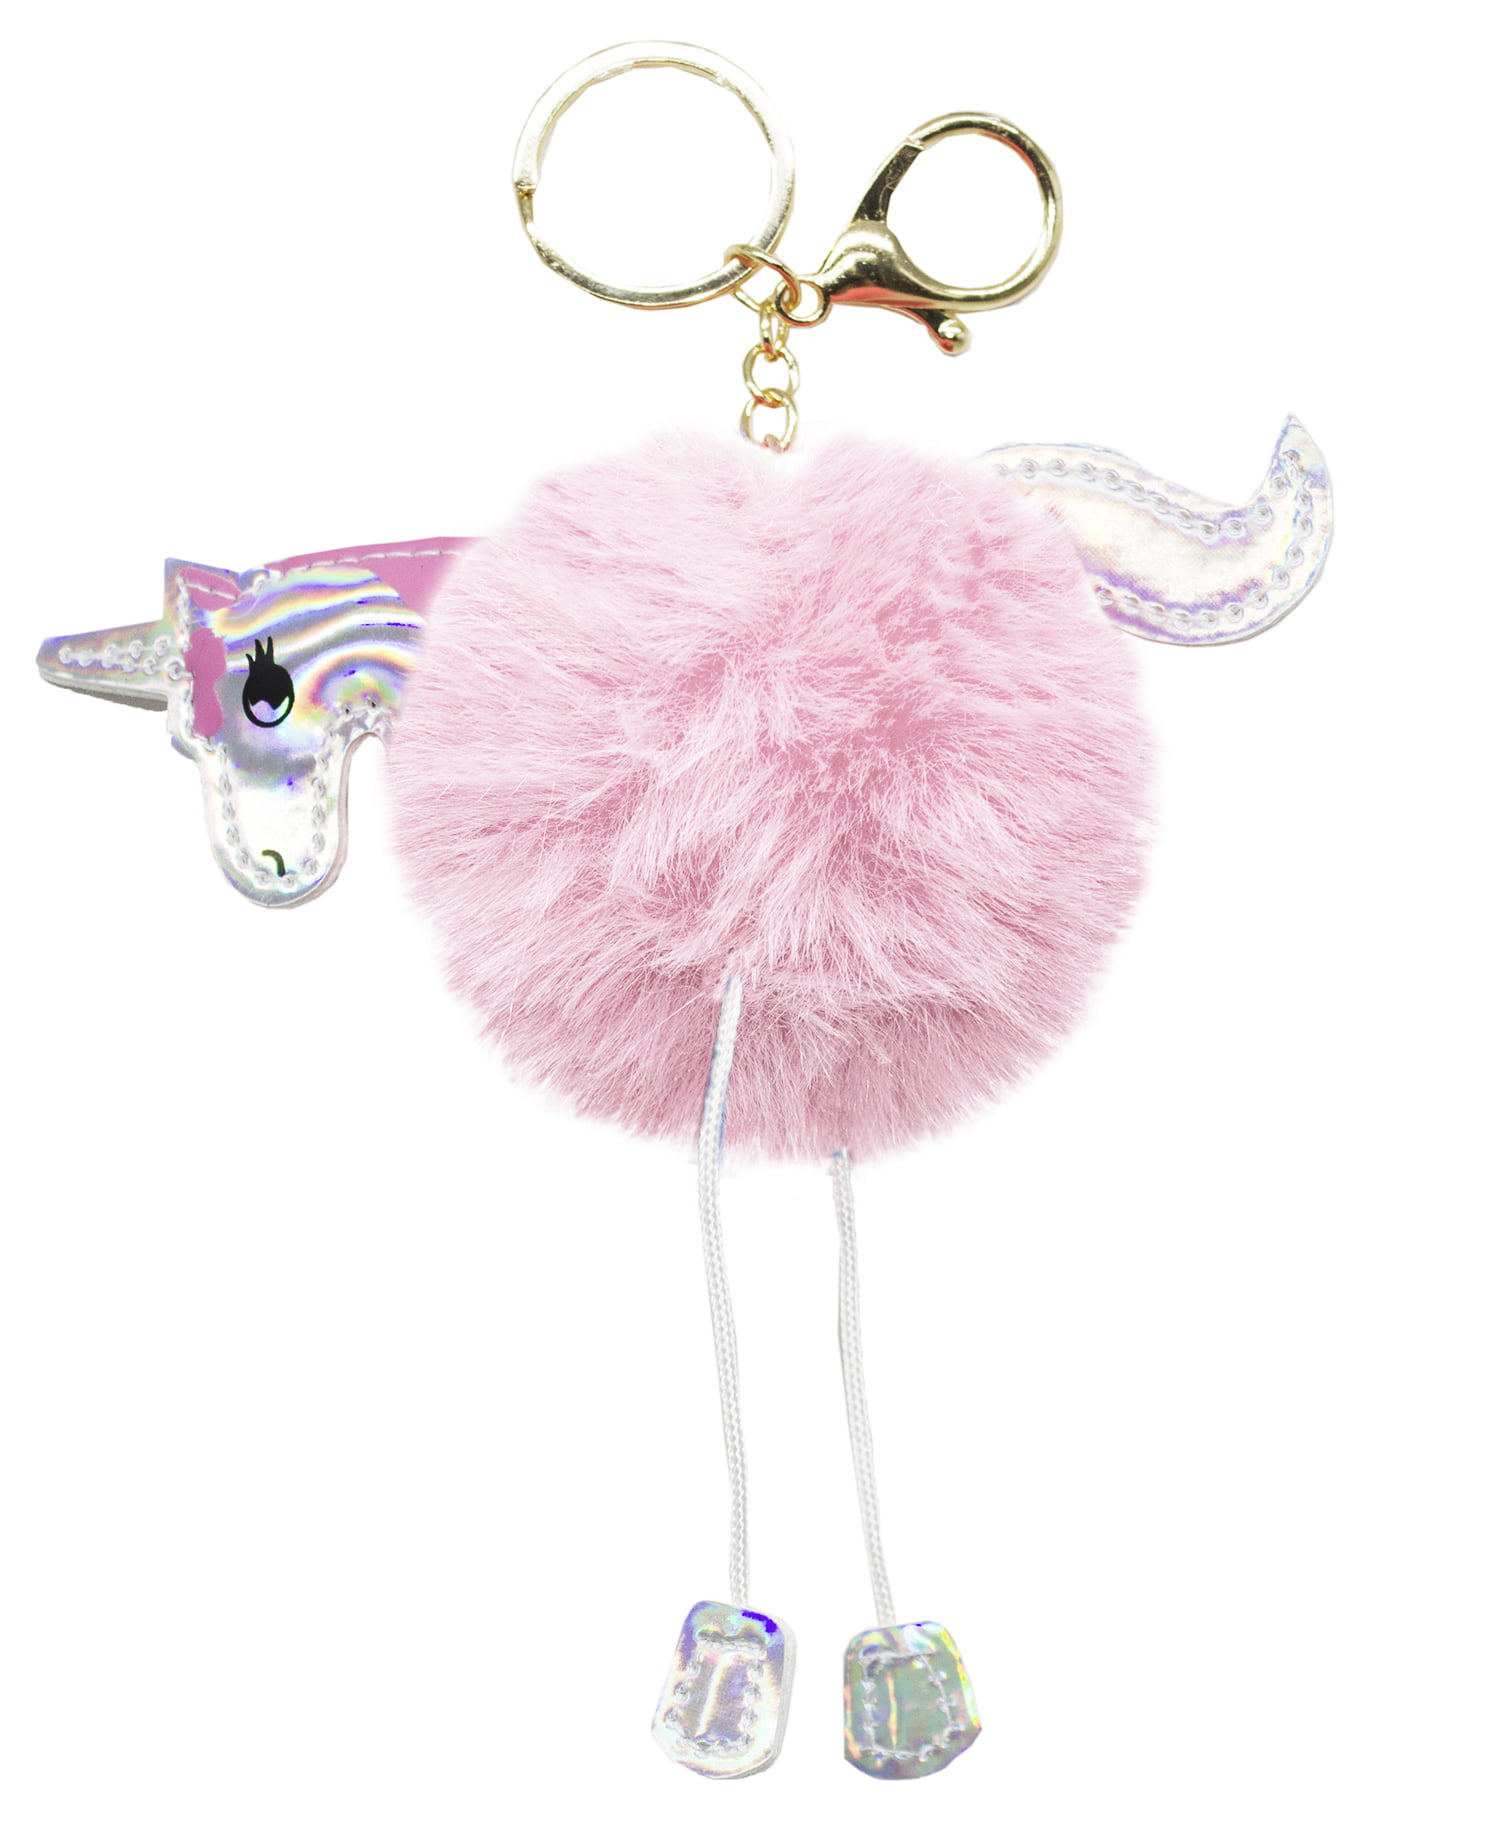 FLUFFY UNICORN KEYCHAIN 6" Cute Faux Fur Key Chain Ring Accessory Fun Girl Gift